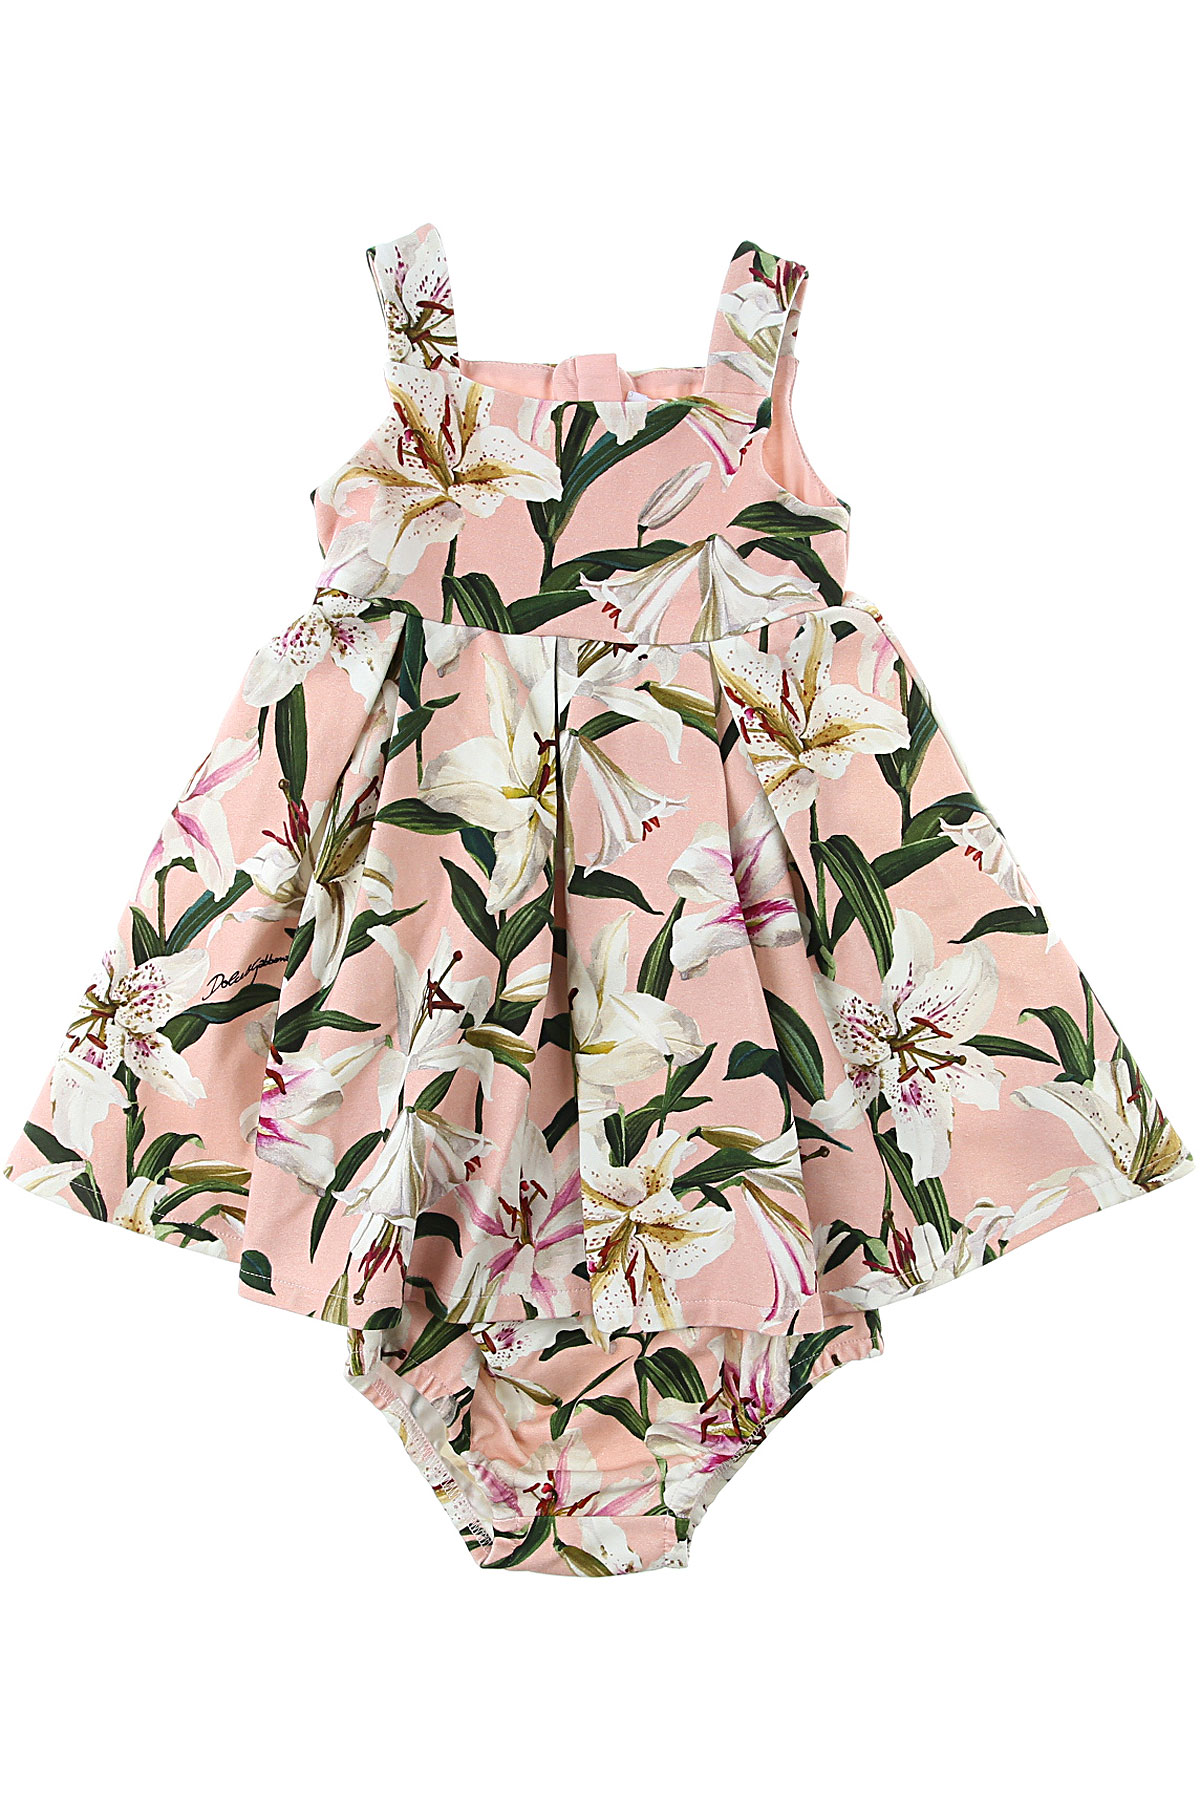 Dolce & Gabbana Baby Kleid für Mädchen Günstig im Sale, Pink, Baumwolle, 2017, 12M 24M 30M 9M